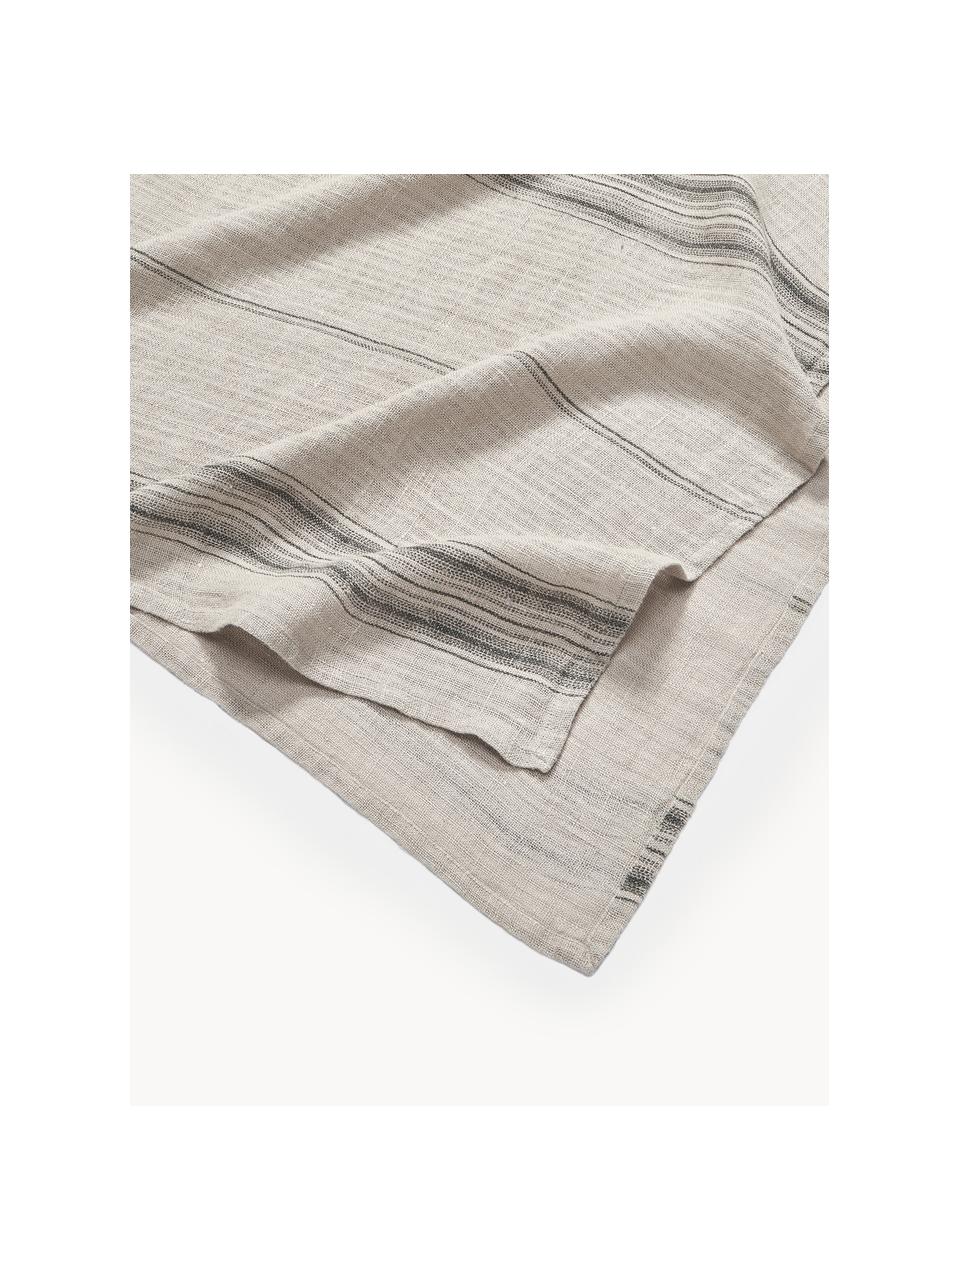 Tovaglia in lino Striped, 100% lino, Tonalità grigie, 4-6 persone (Larg. 140 x Lung. 220 cm)